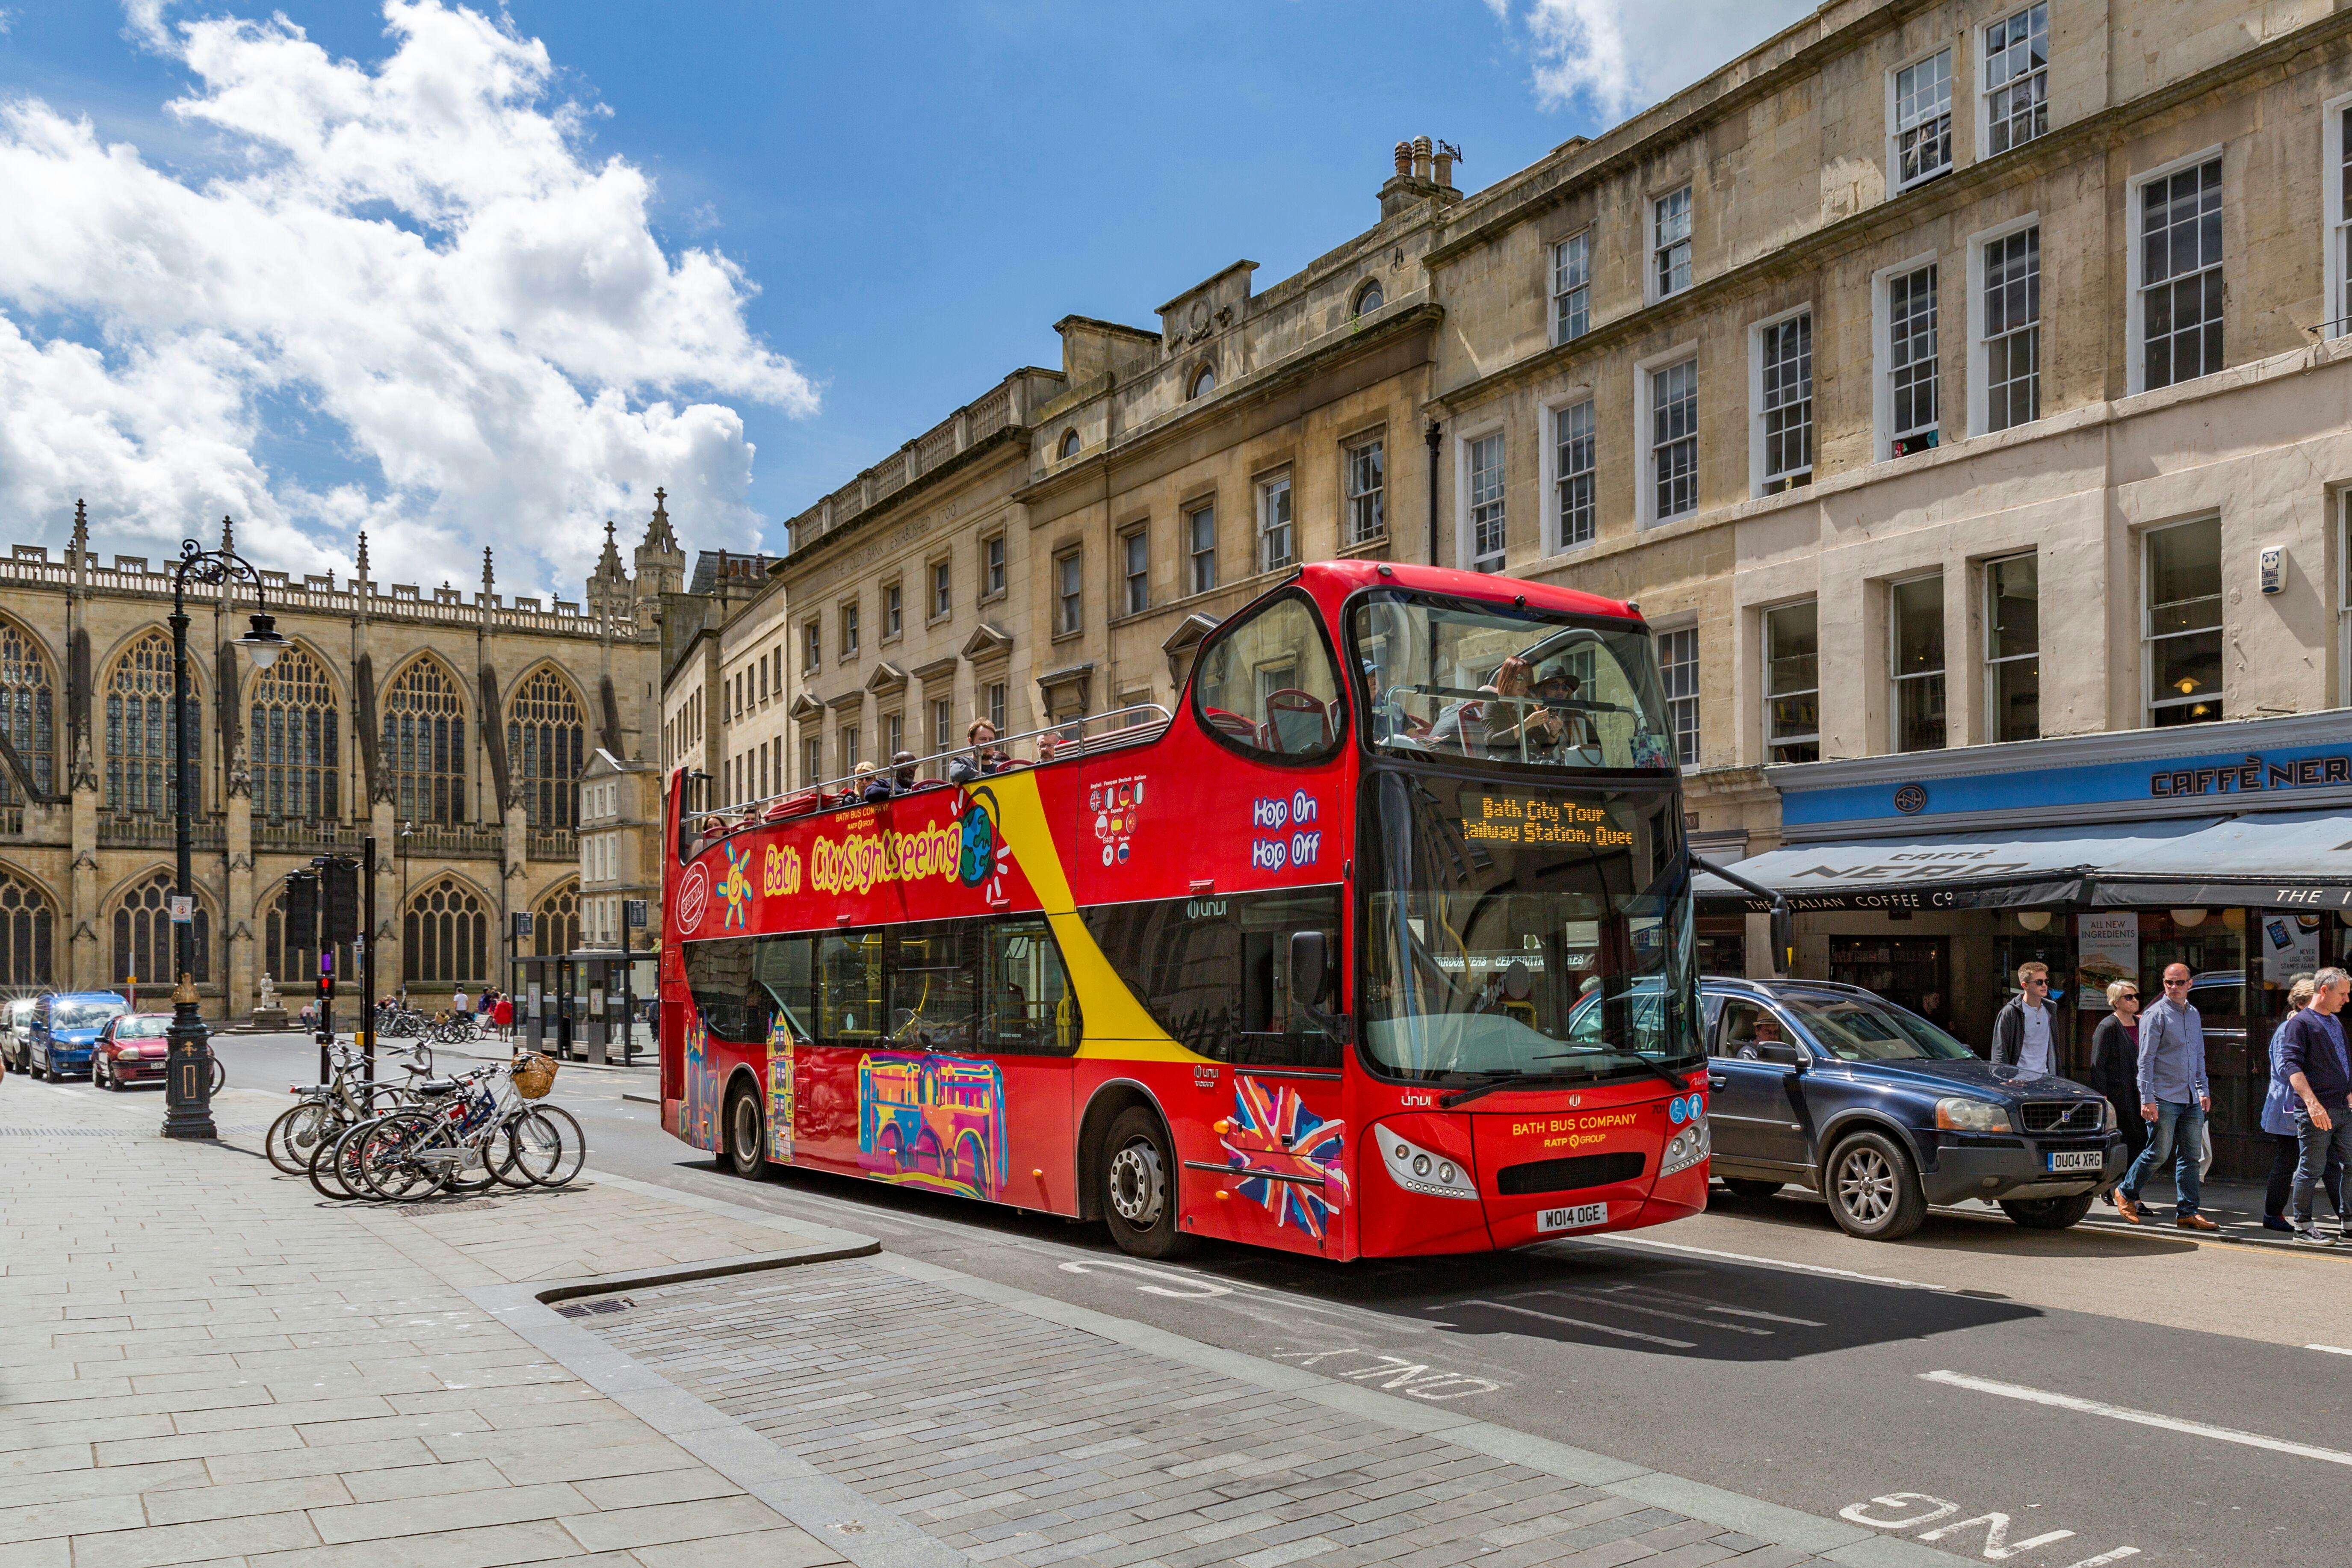 Visite de Bath en bus à arrêts multiples City Sightseeing, 24 heures sur 24